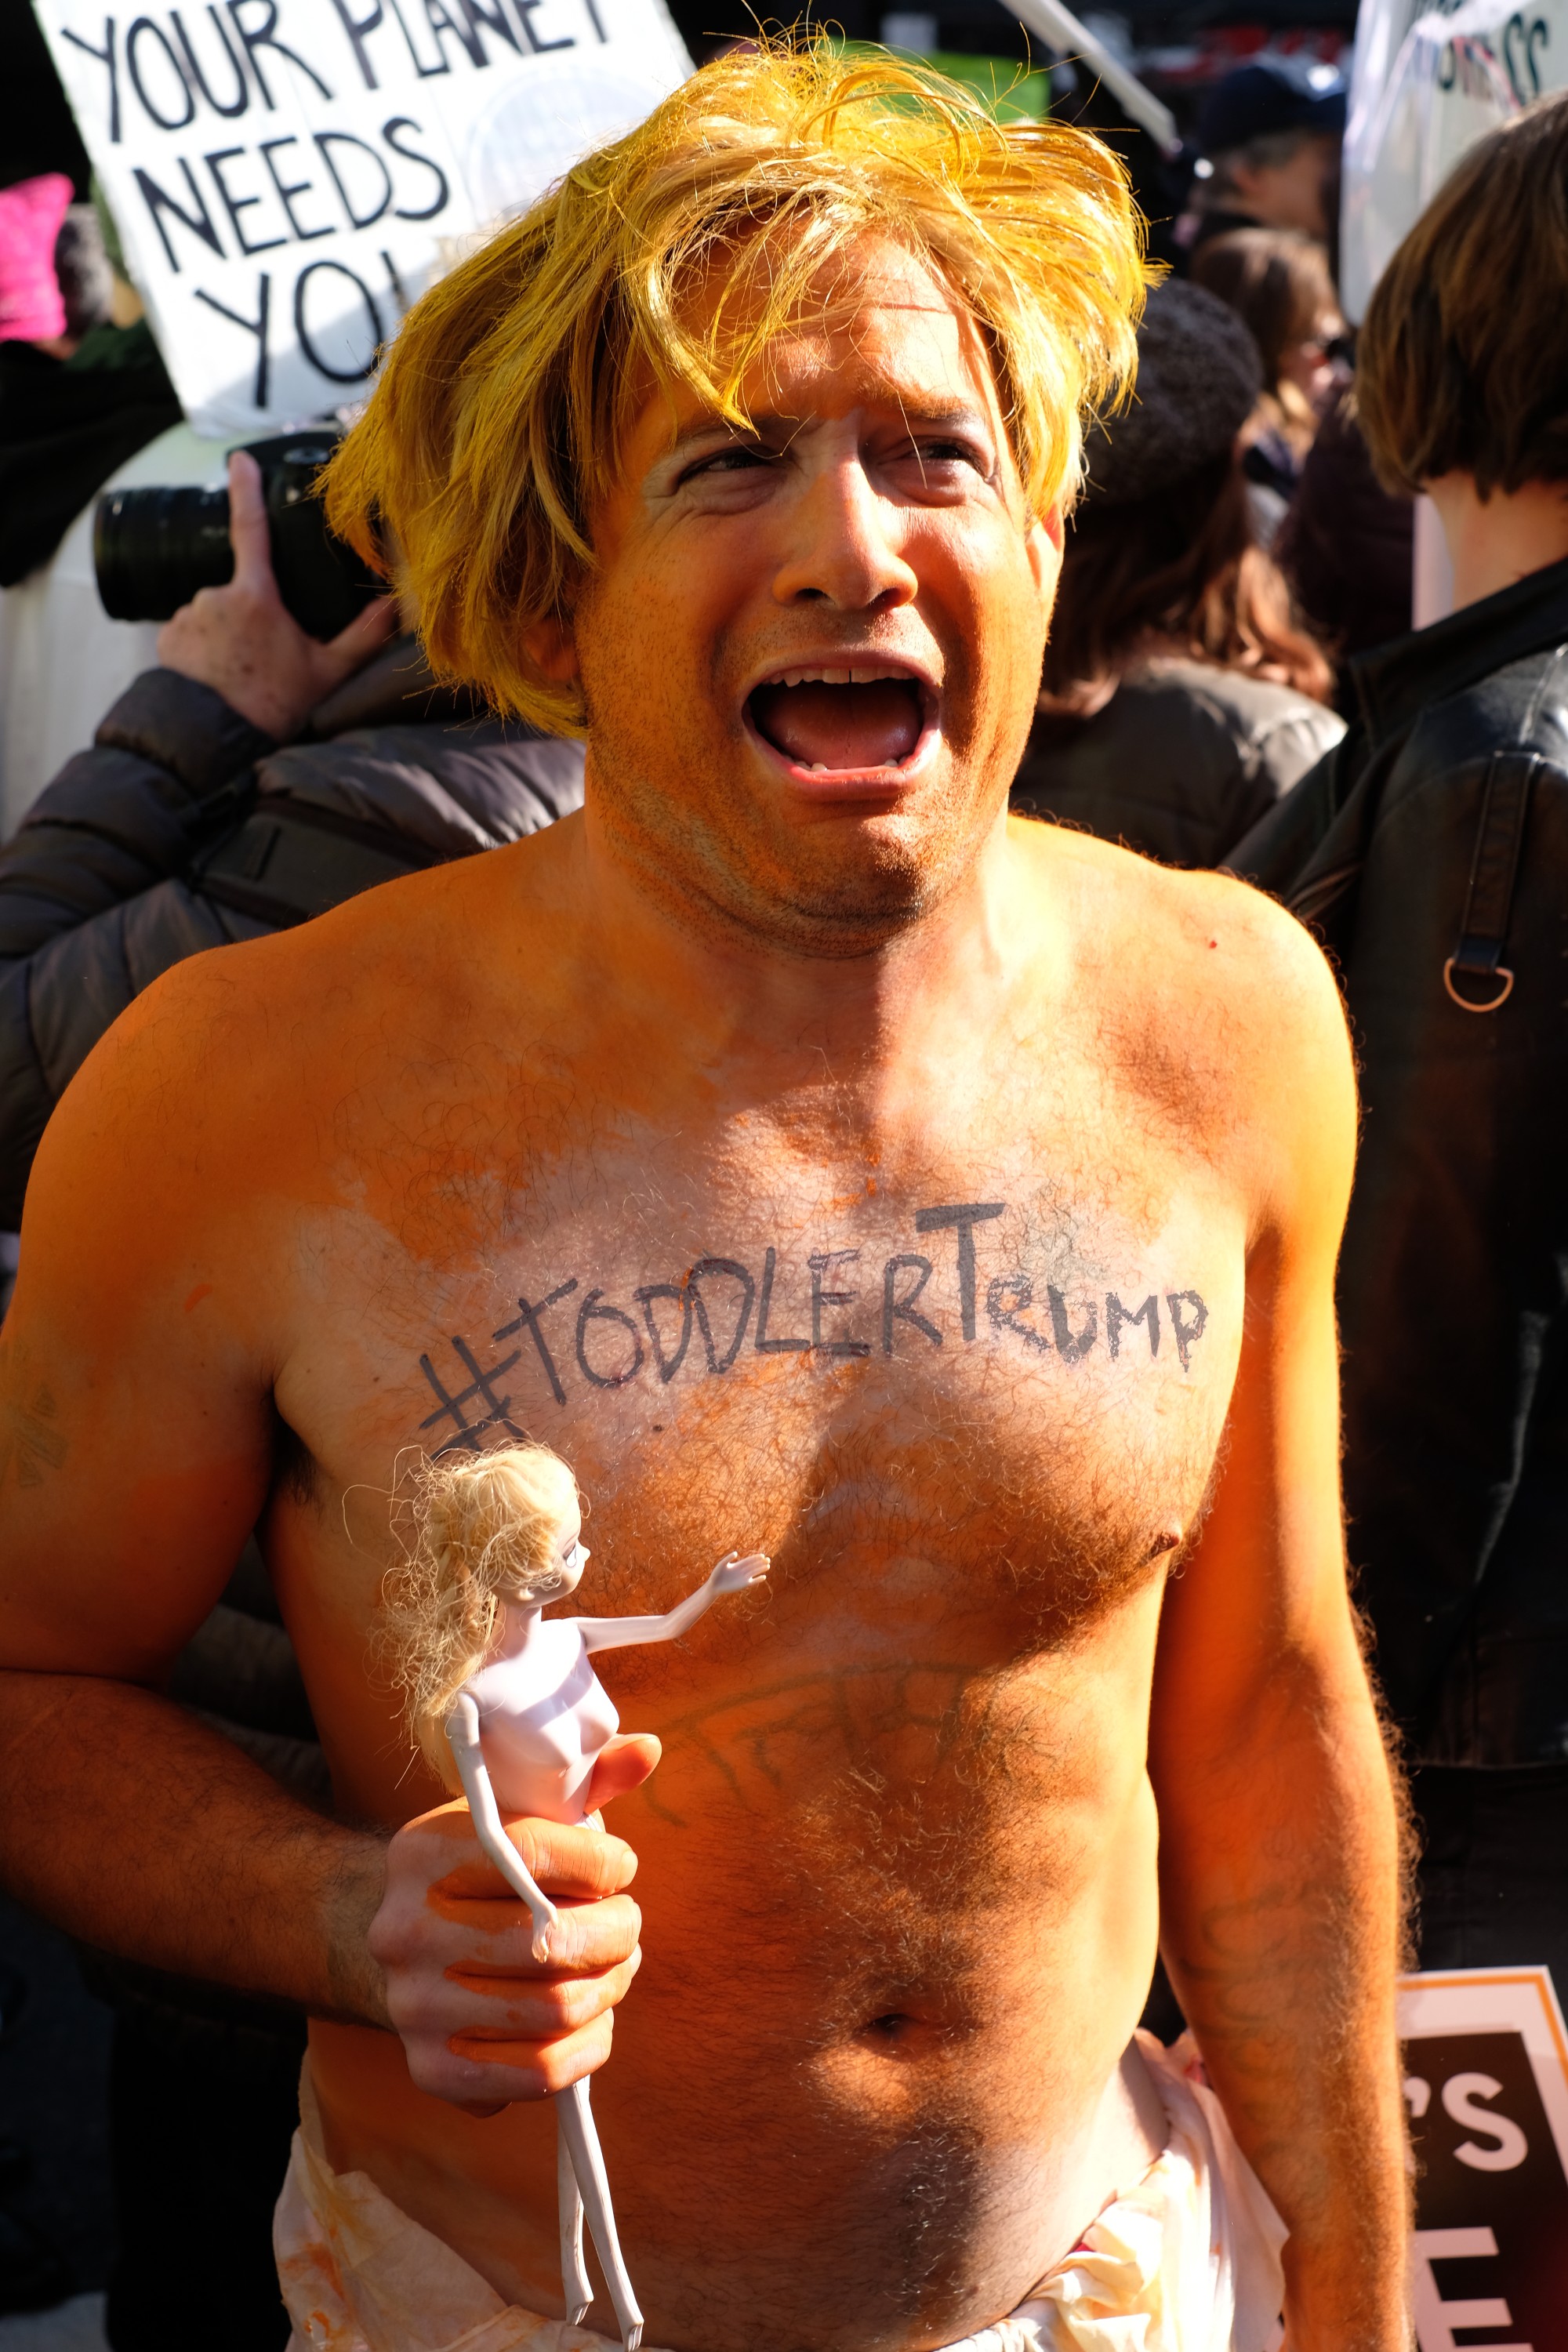 man with orange skin mocking Trump